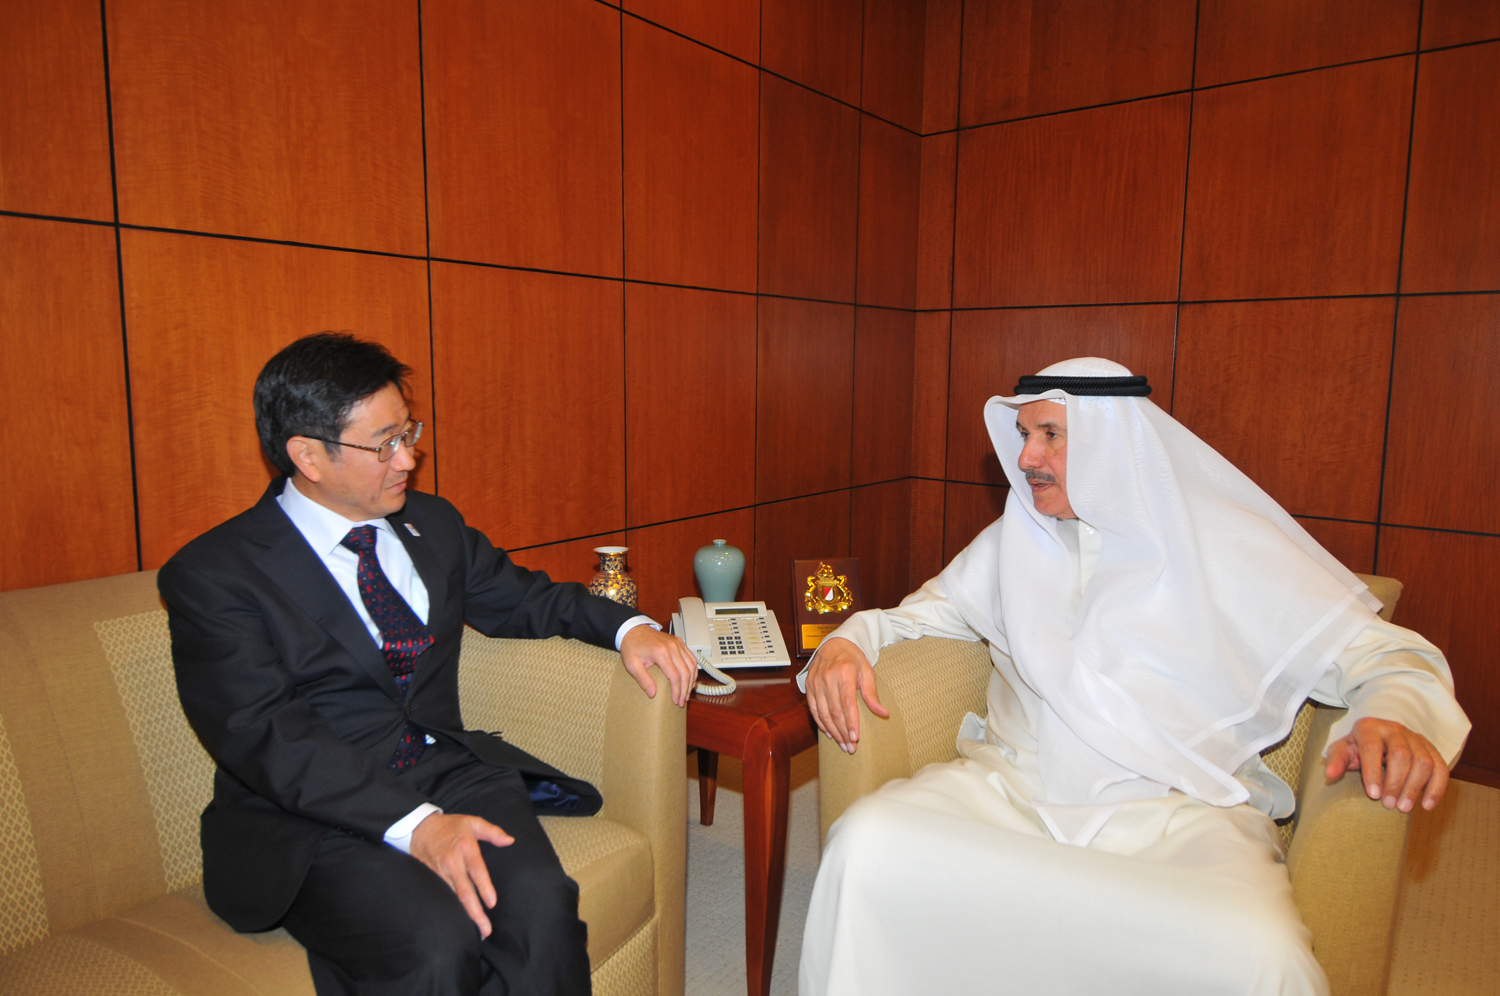 عضو مجلس ادارة غرفة تجارة وصناعة الكويت خالد الصقر مع السفير الياباني لدى الكويت توشيهيرو تسوجيهارو